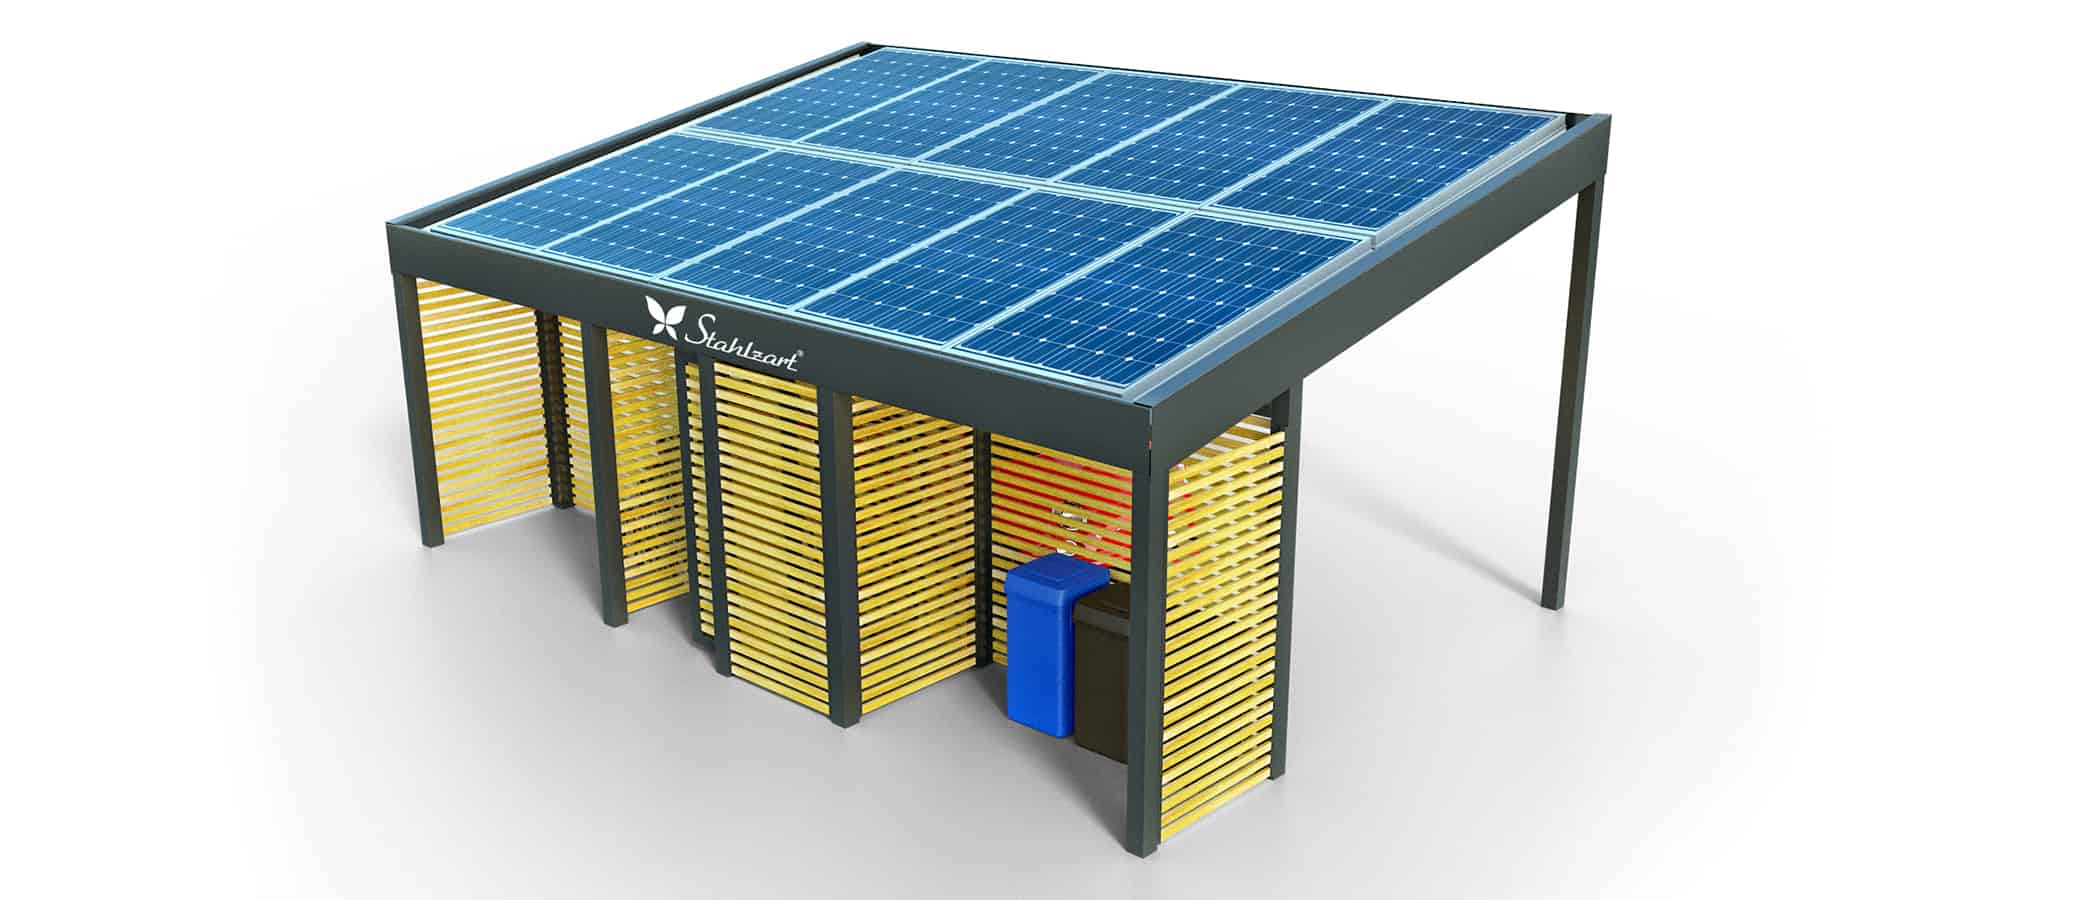 solar-carport-mit-schraegdach-solar-carports-e-fahrzeuge-pv-anlage-solarcarport-strom-solaranalge-carportdach-holz-metall-mit-schuppen-muelltonnen-modern-stahlzart